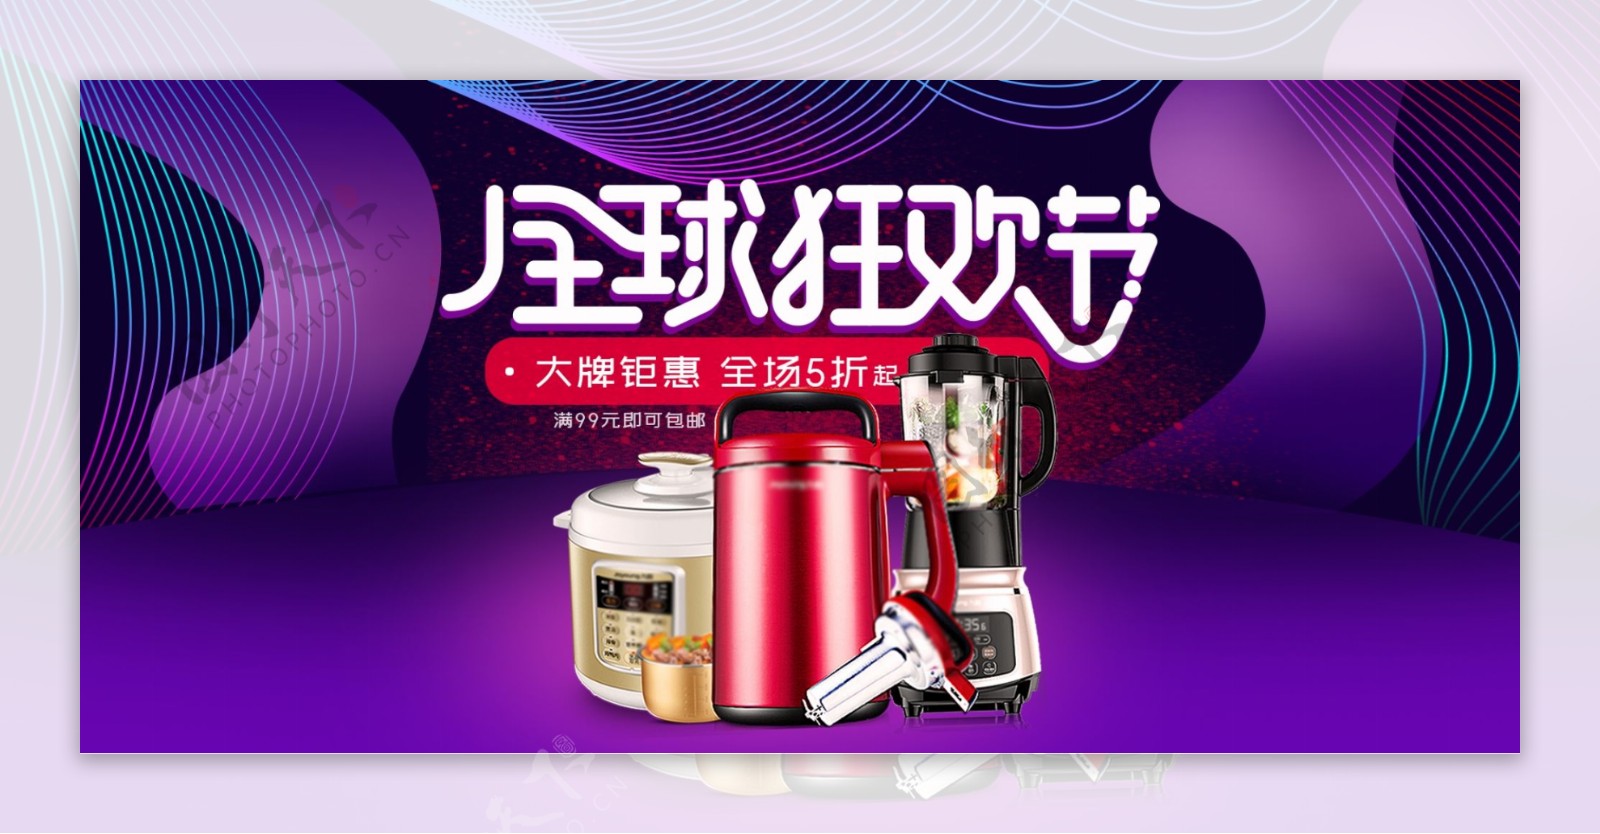 紫色炫酷电器电商淘宝全球狂欢节促销海报